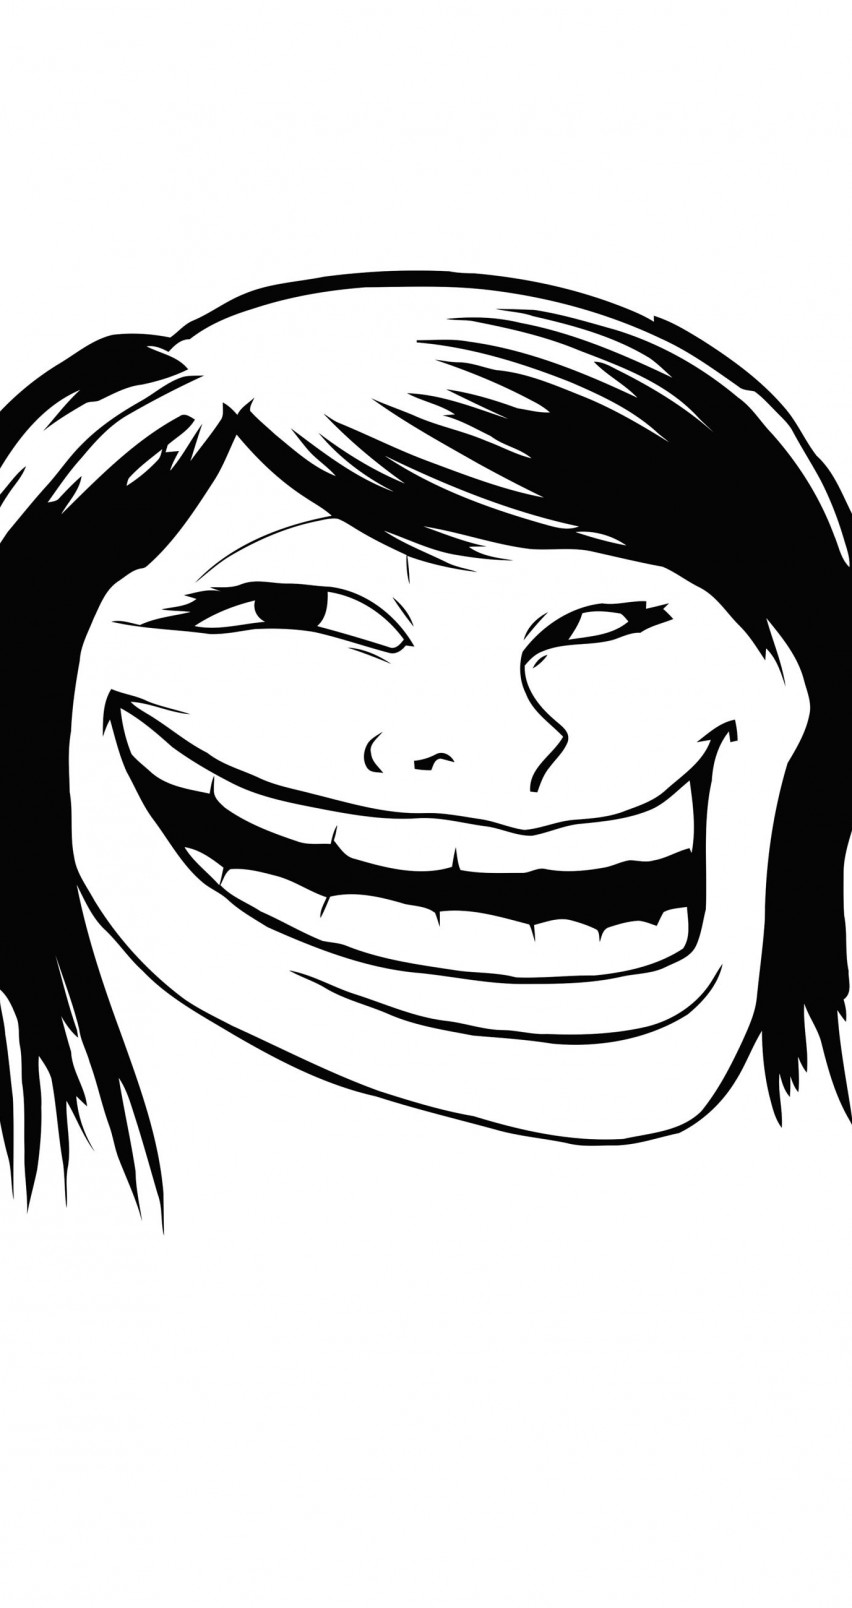 Female Troll Face Meme Wallpaper for Apple iPhone 6 / 6s